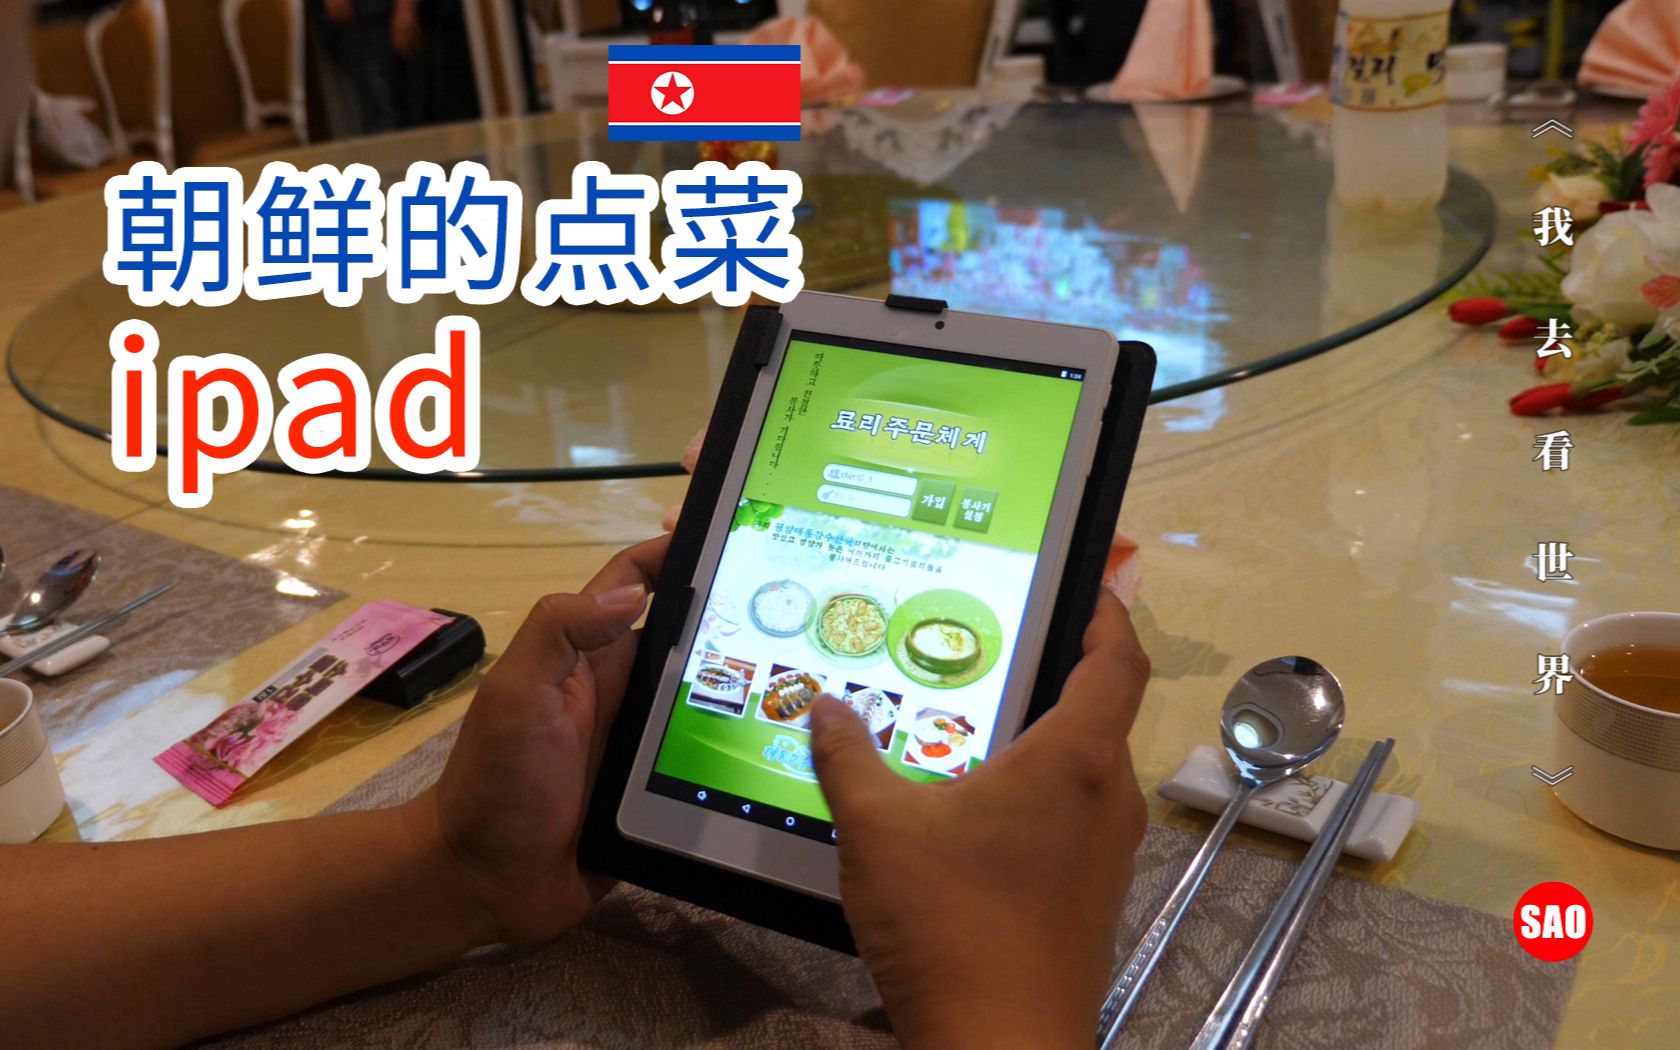 【朝鲜世界3】33集：朝鲜餐厅现点菜iPad，螃蟹售价一斤15美金【我去看世界第23季】SAO纪录片团队制作